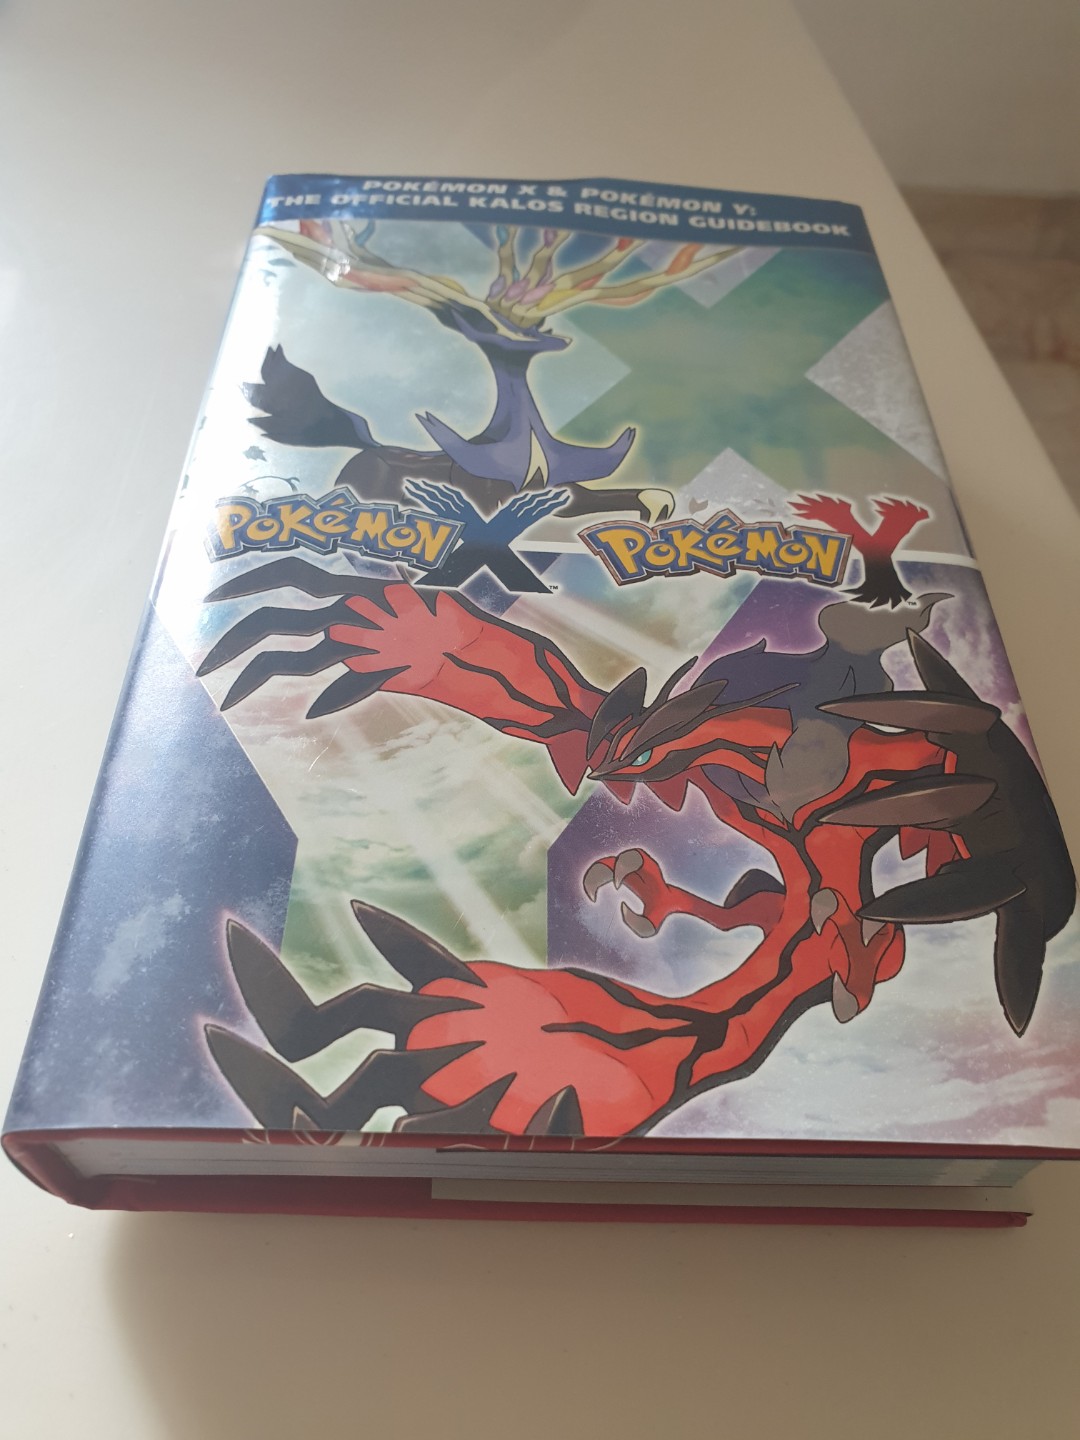 Pokemon X & Pokemon Y: The Official Kalos Region Guidebook Book *Lot of 4*  9780804161992